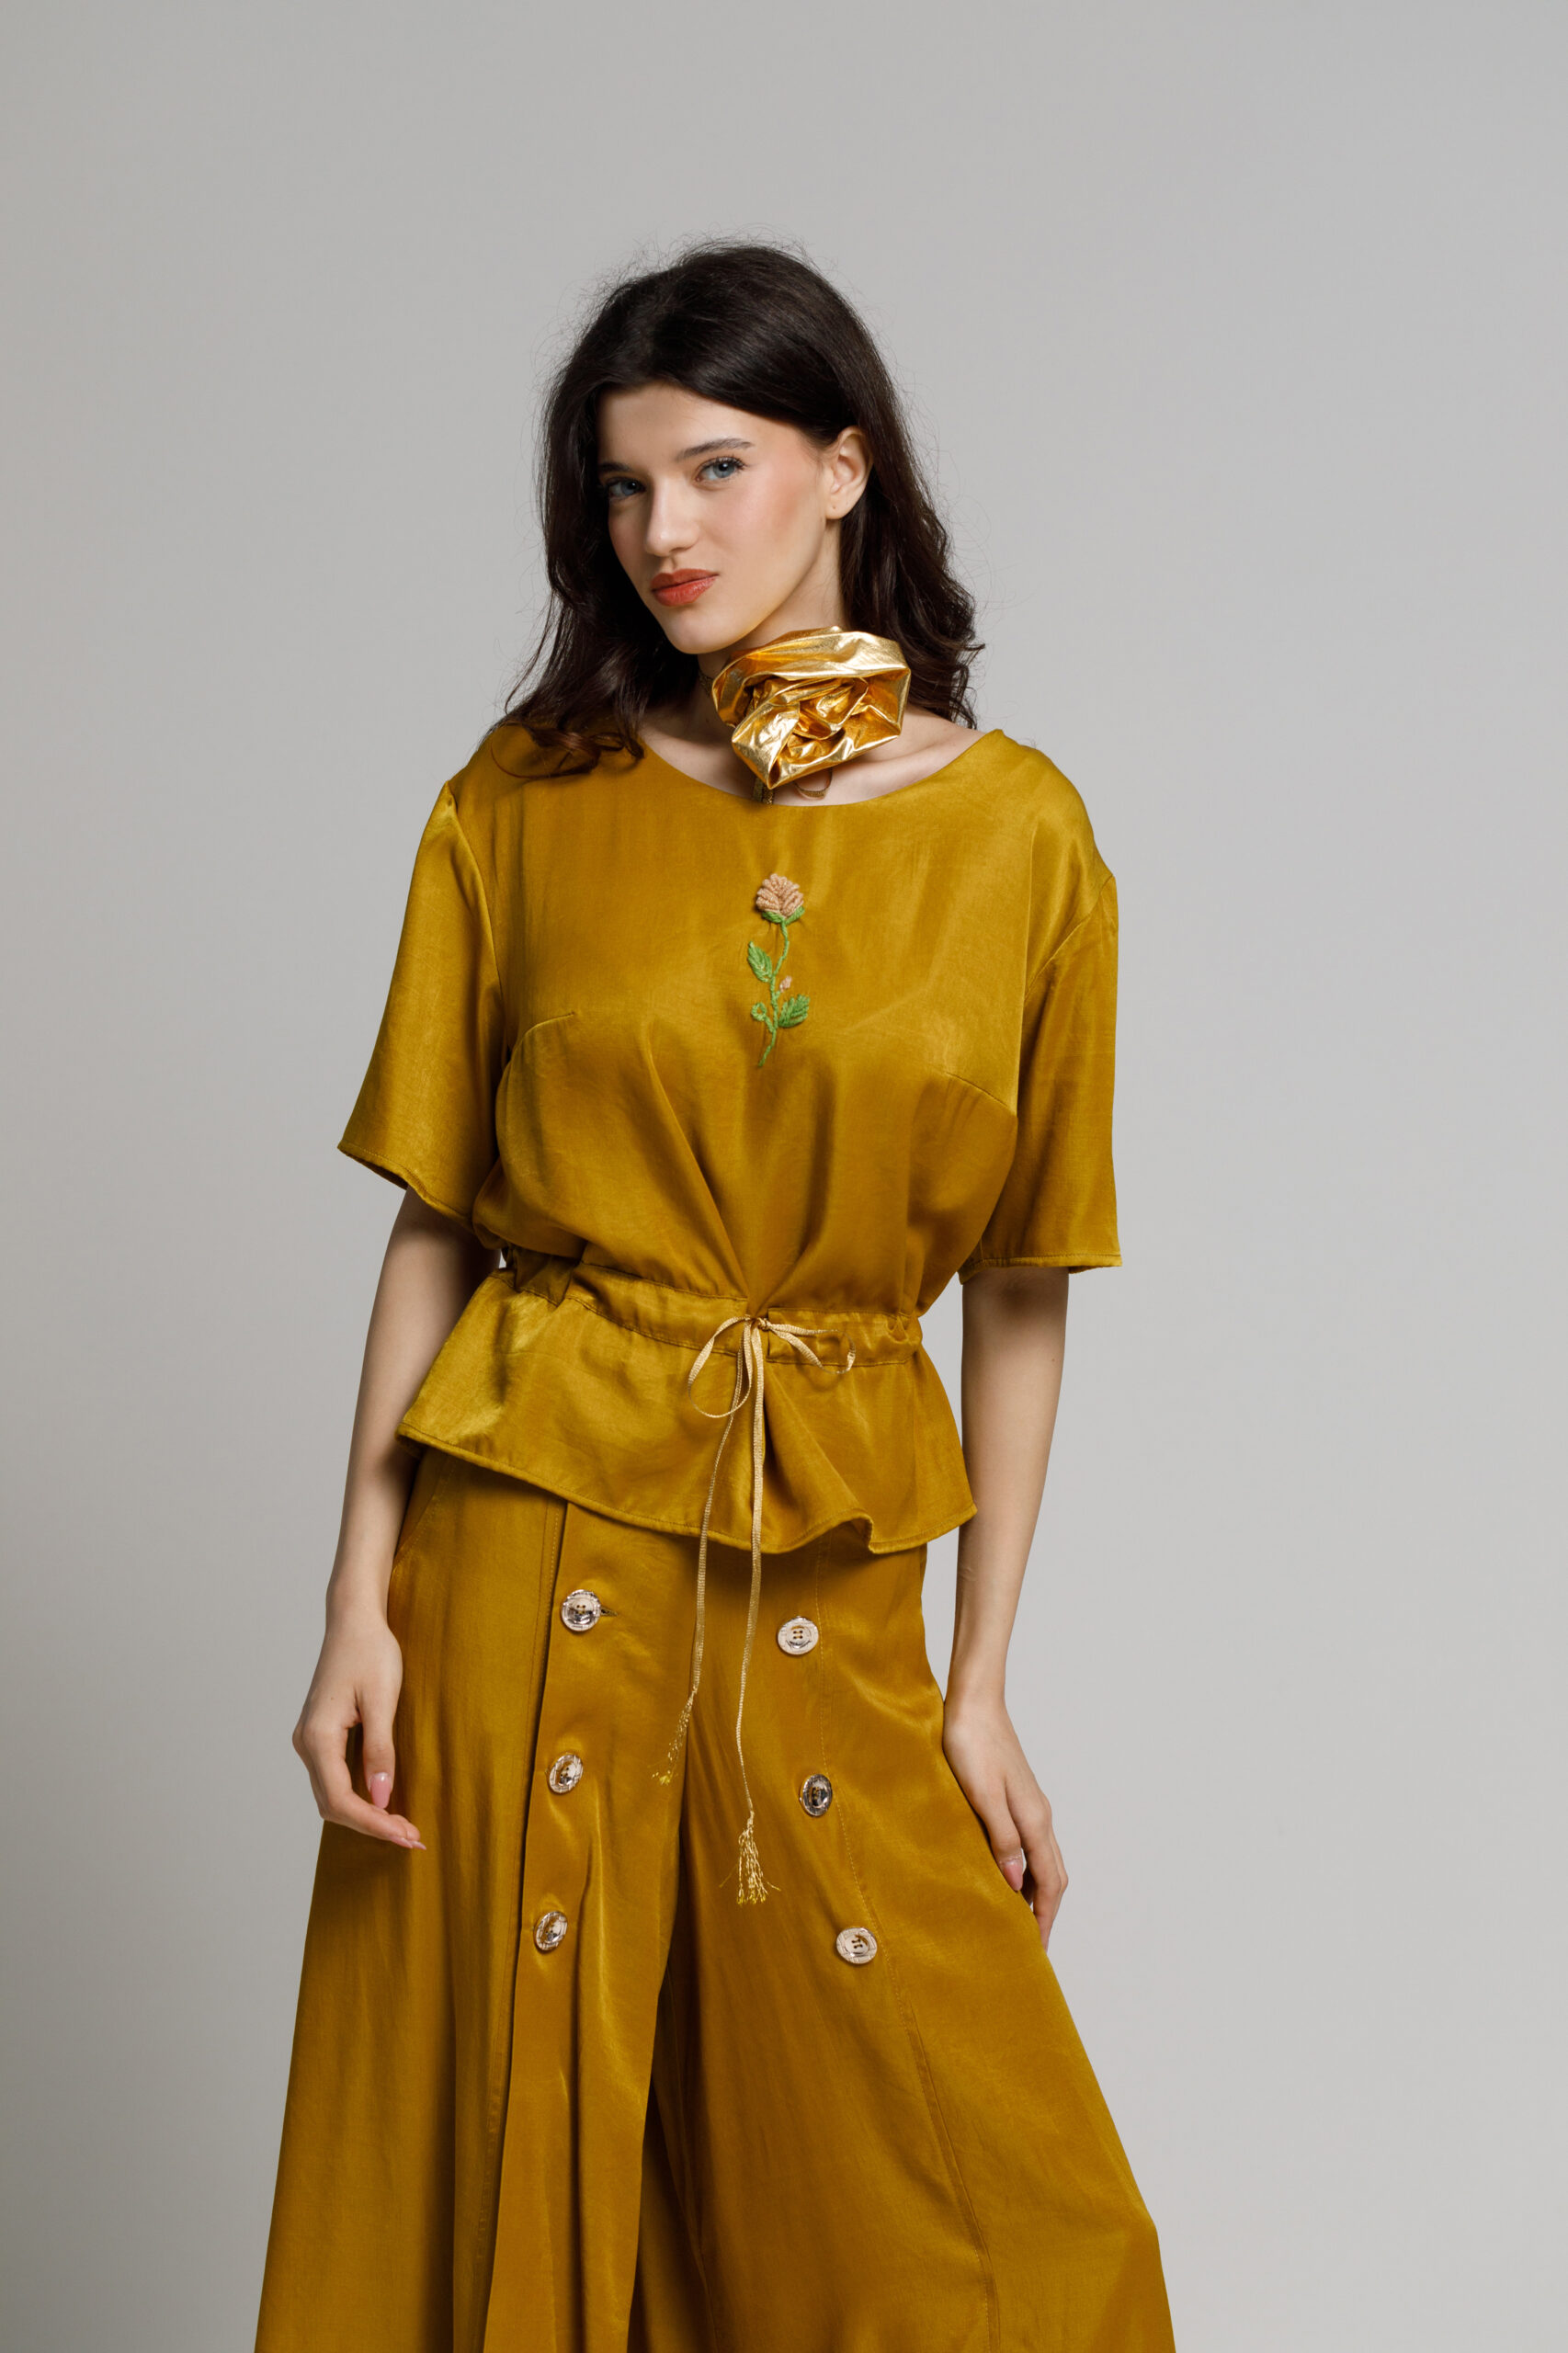 Bluza BERRY bronz auriu cu snur in talie. Materiale naturale, design unicat, cu broderie si aplicatii handmade